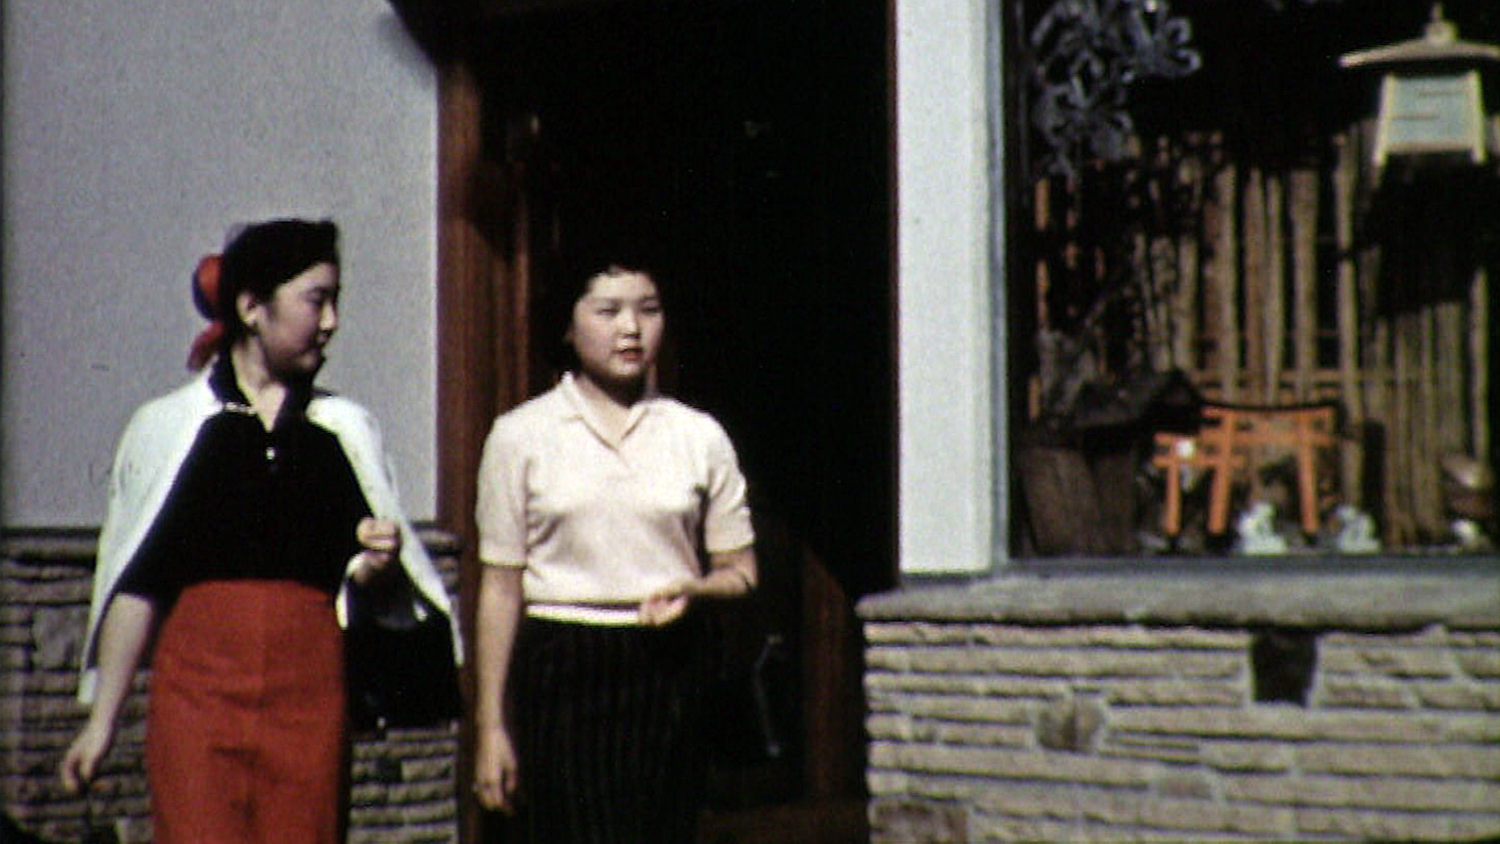 两个亚裔美国人的女孩走在街上